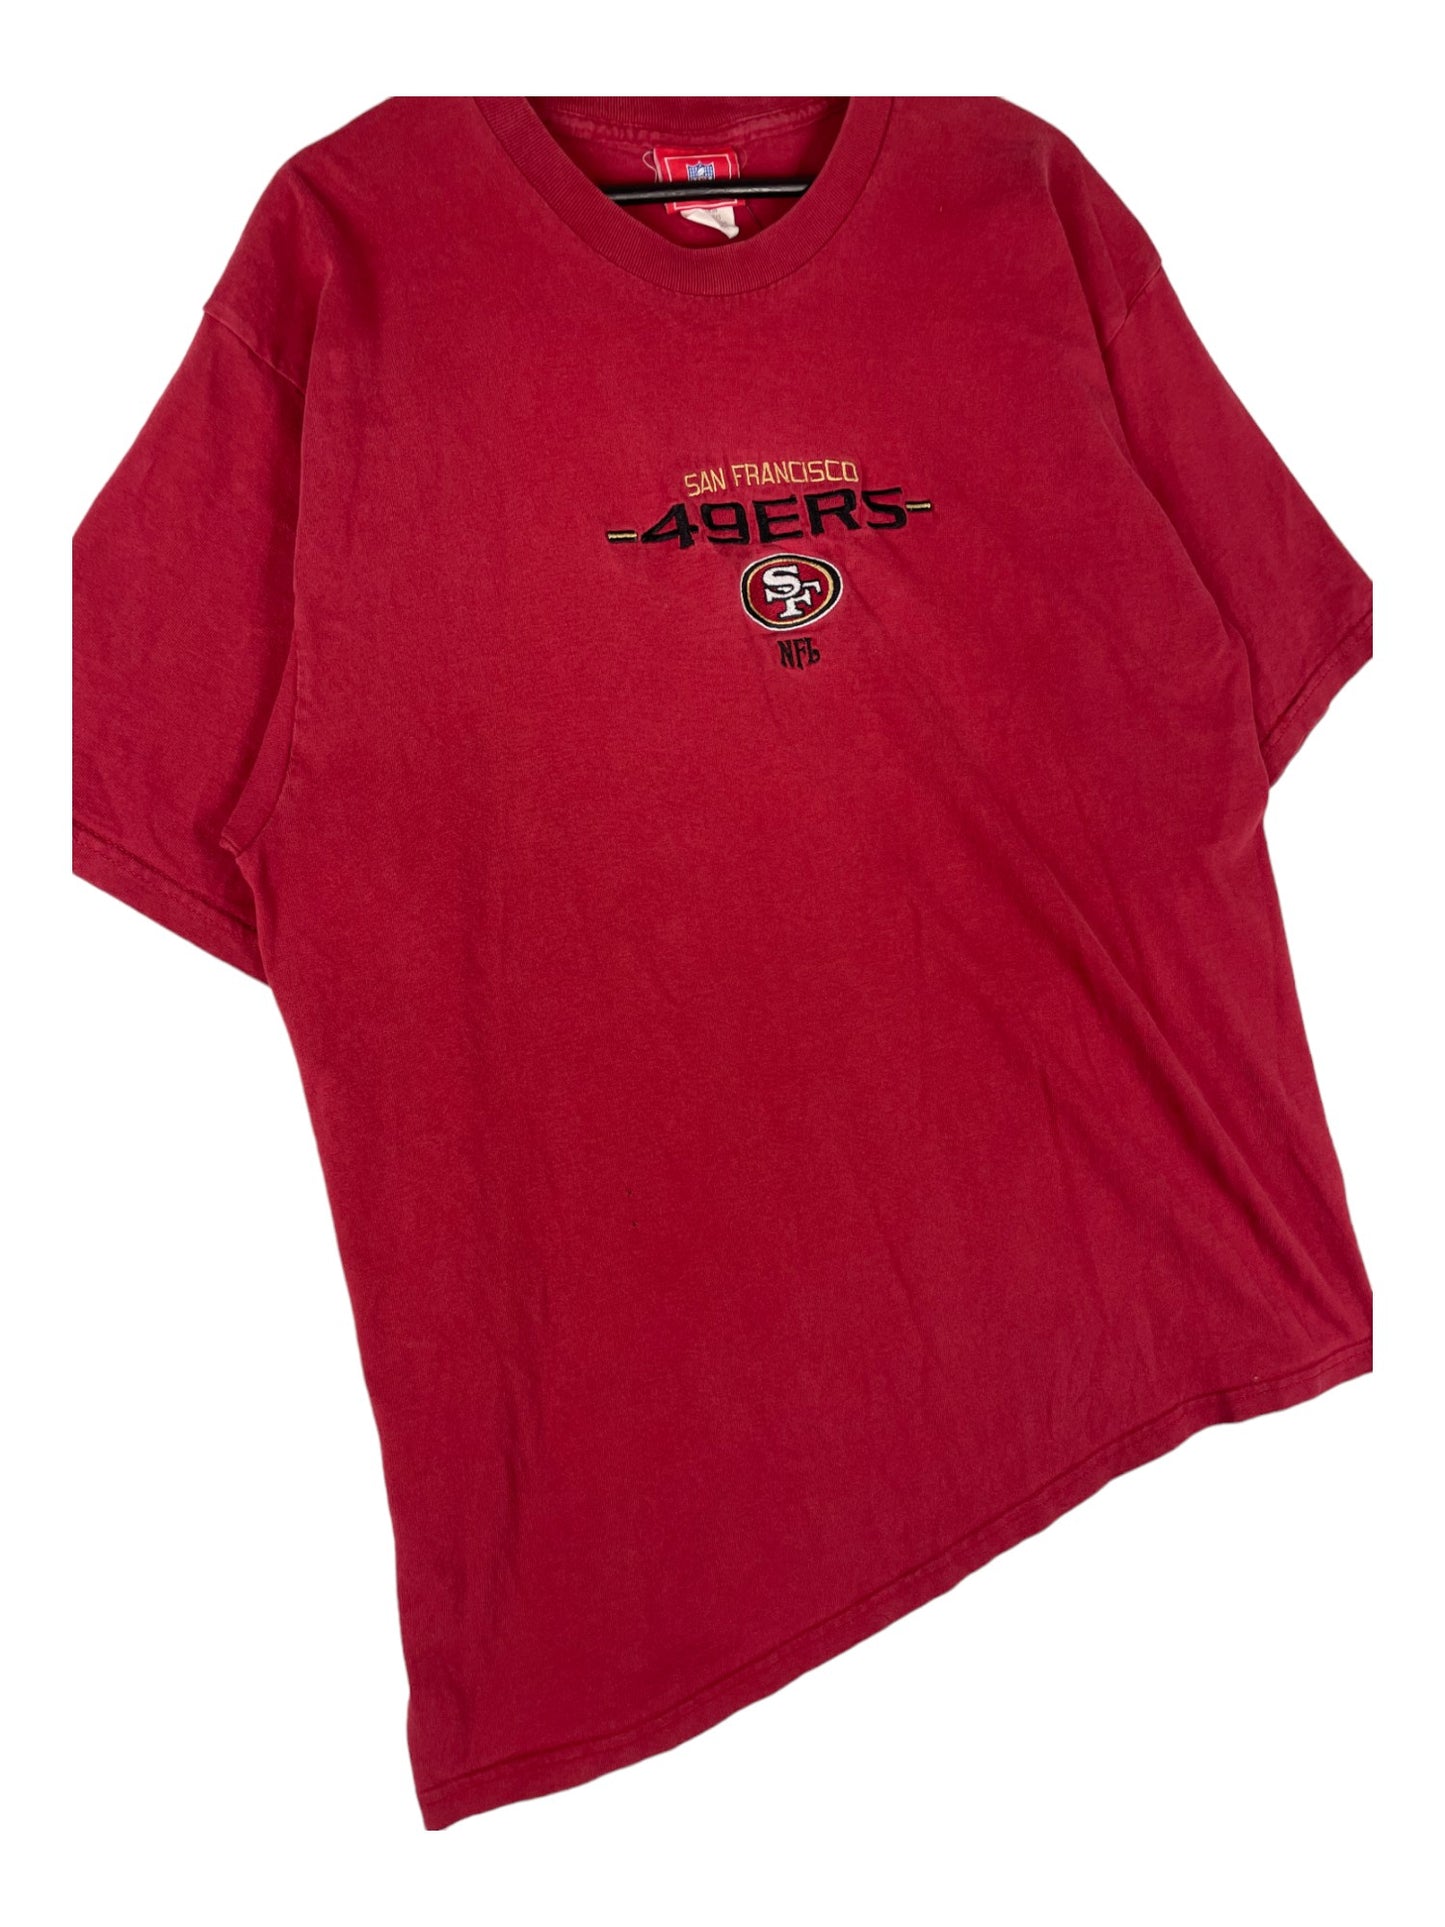 49ers T-Shirt